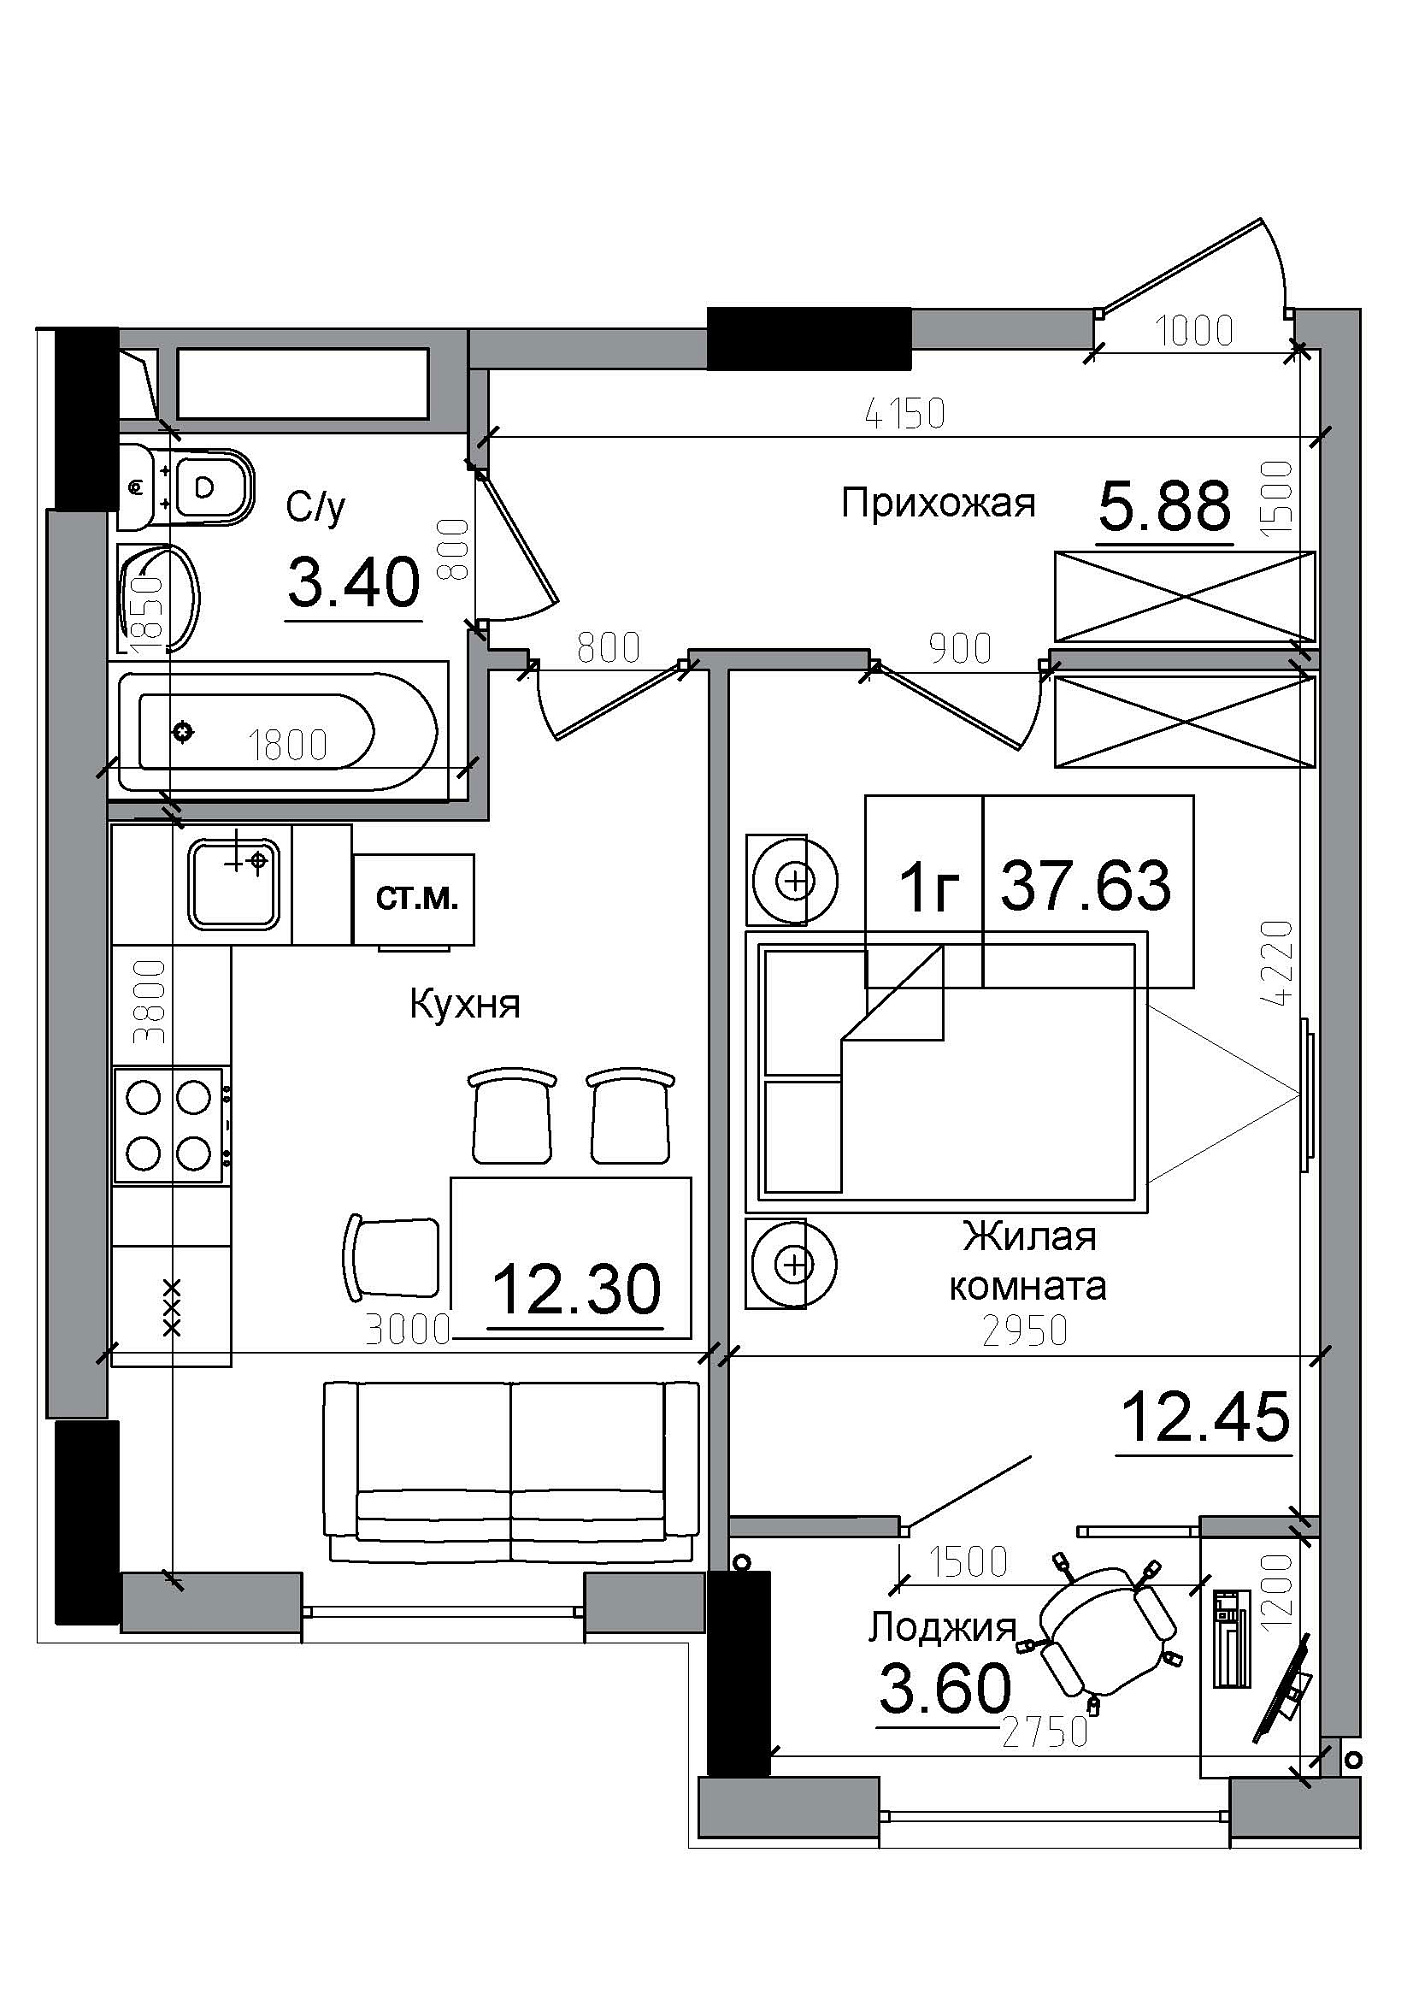 Планировка 1-к квартира площей 37.63м2, AB-12-03/00004.